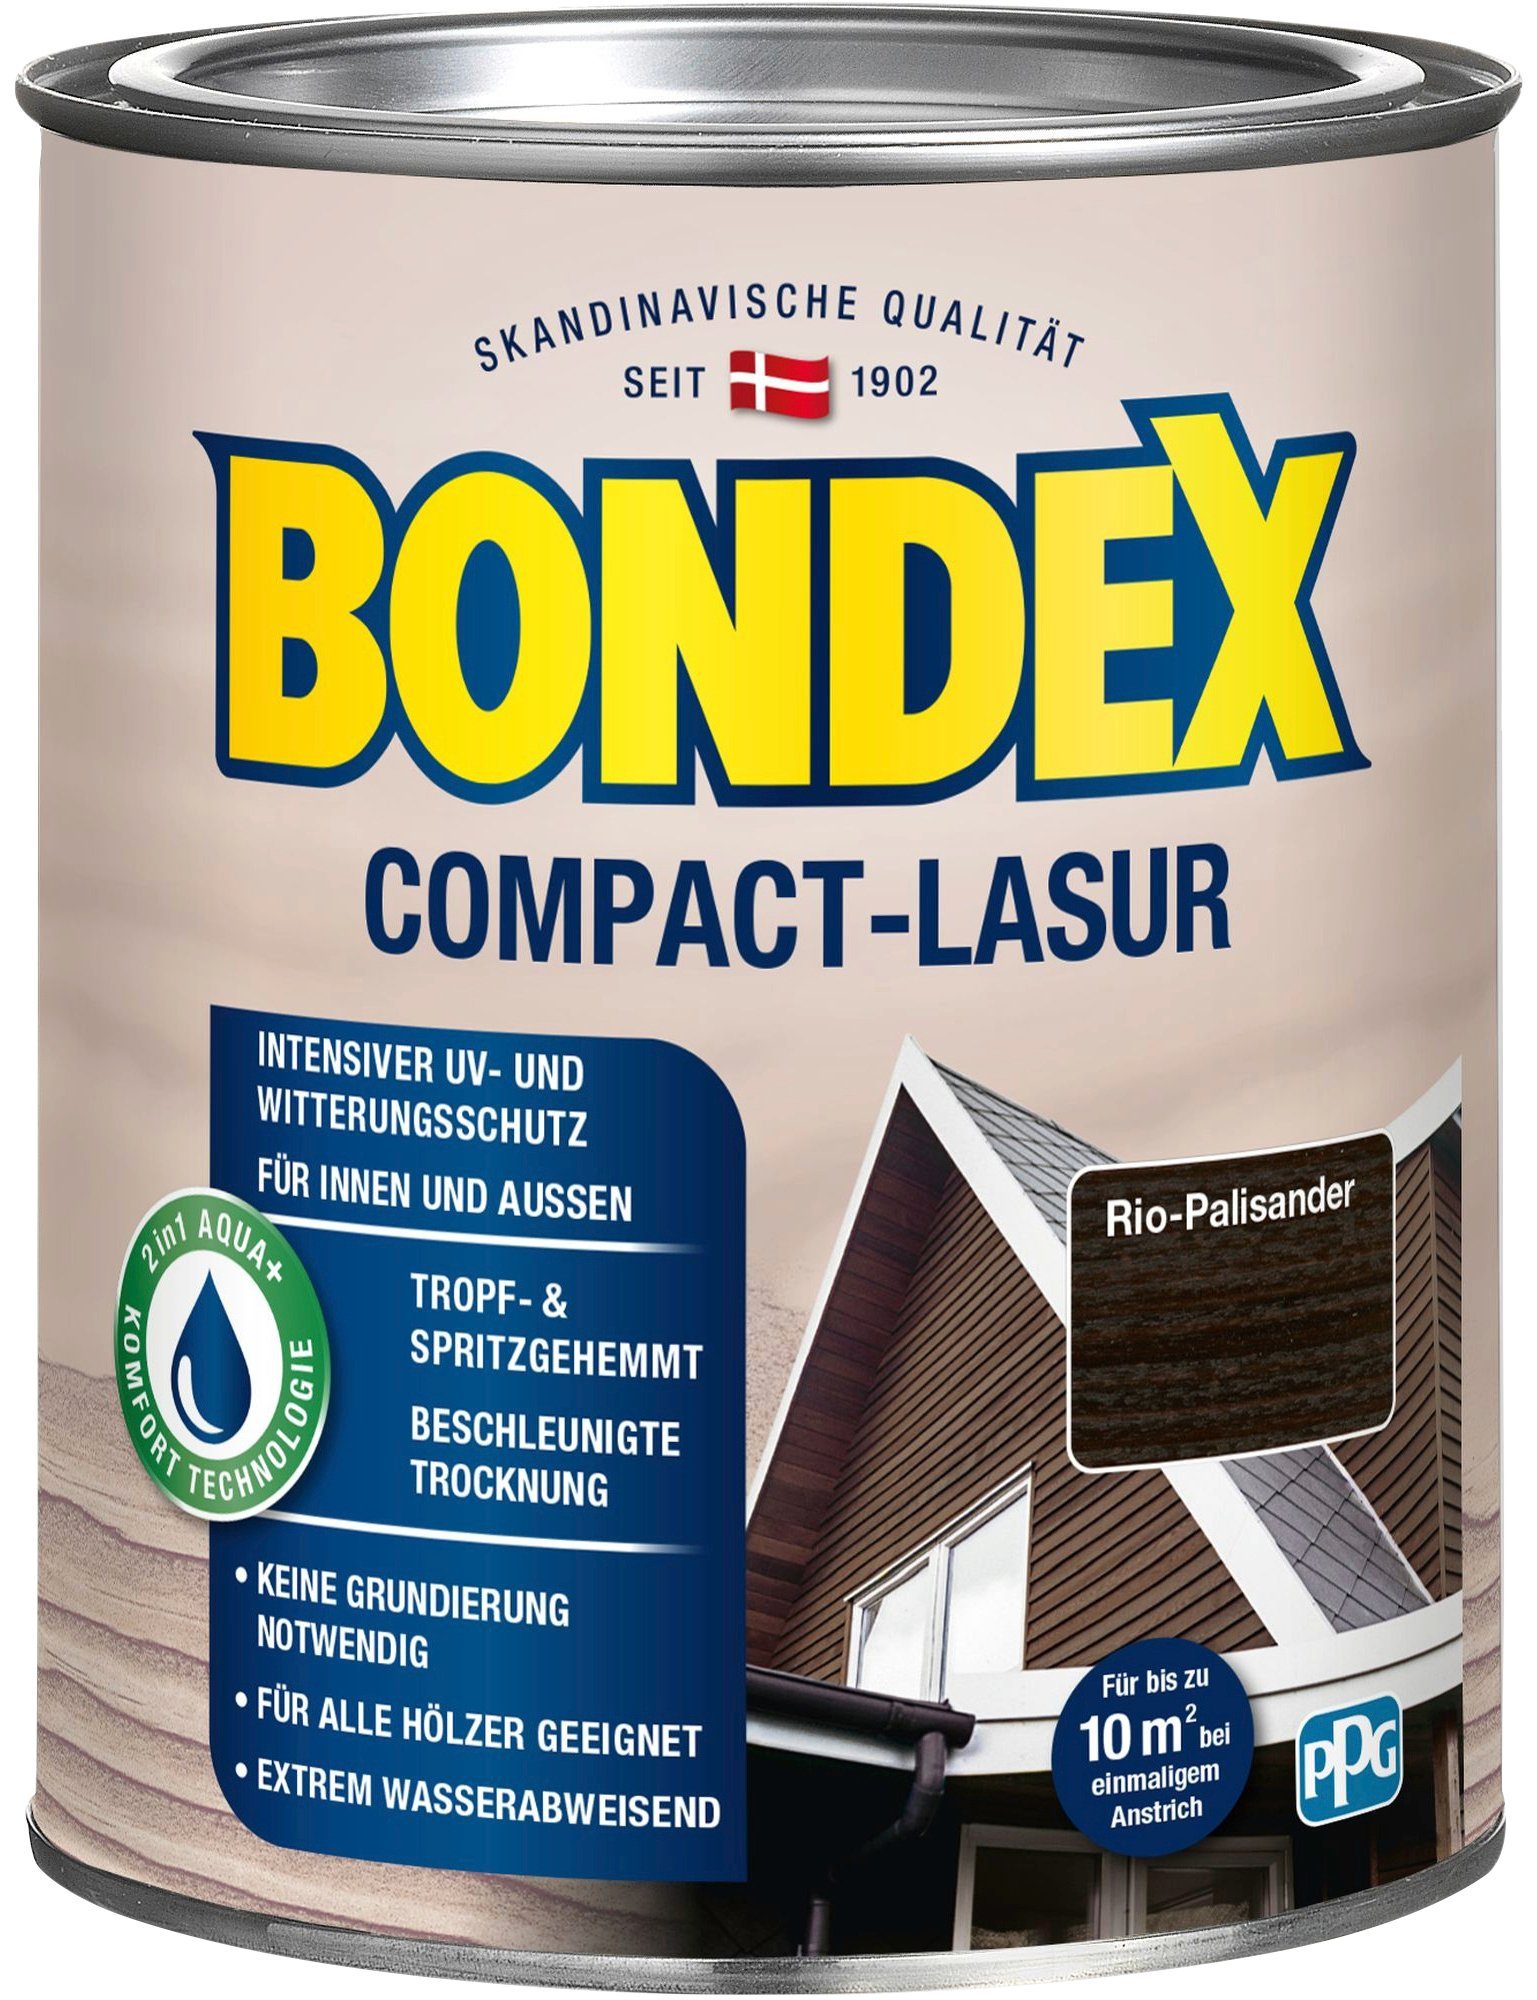 Bondex Holzschutzlasur Witterungsschutz, Rio wasserabweisend & COMPACT-LASUR, Palisander extrem intensiver UV